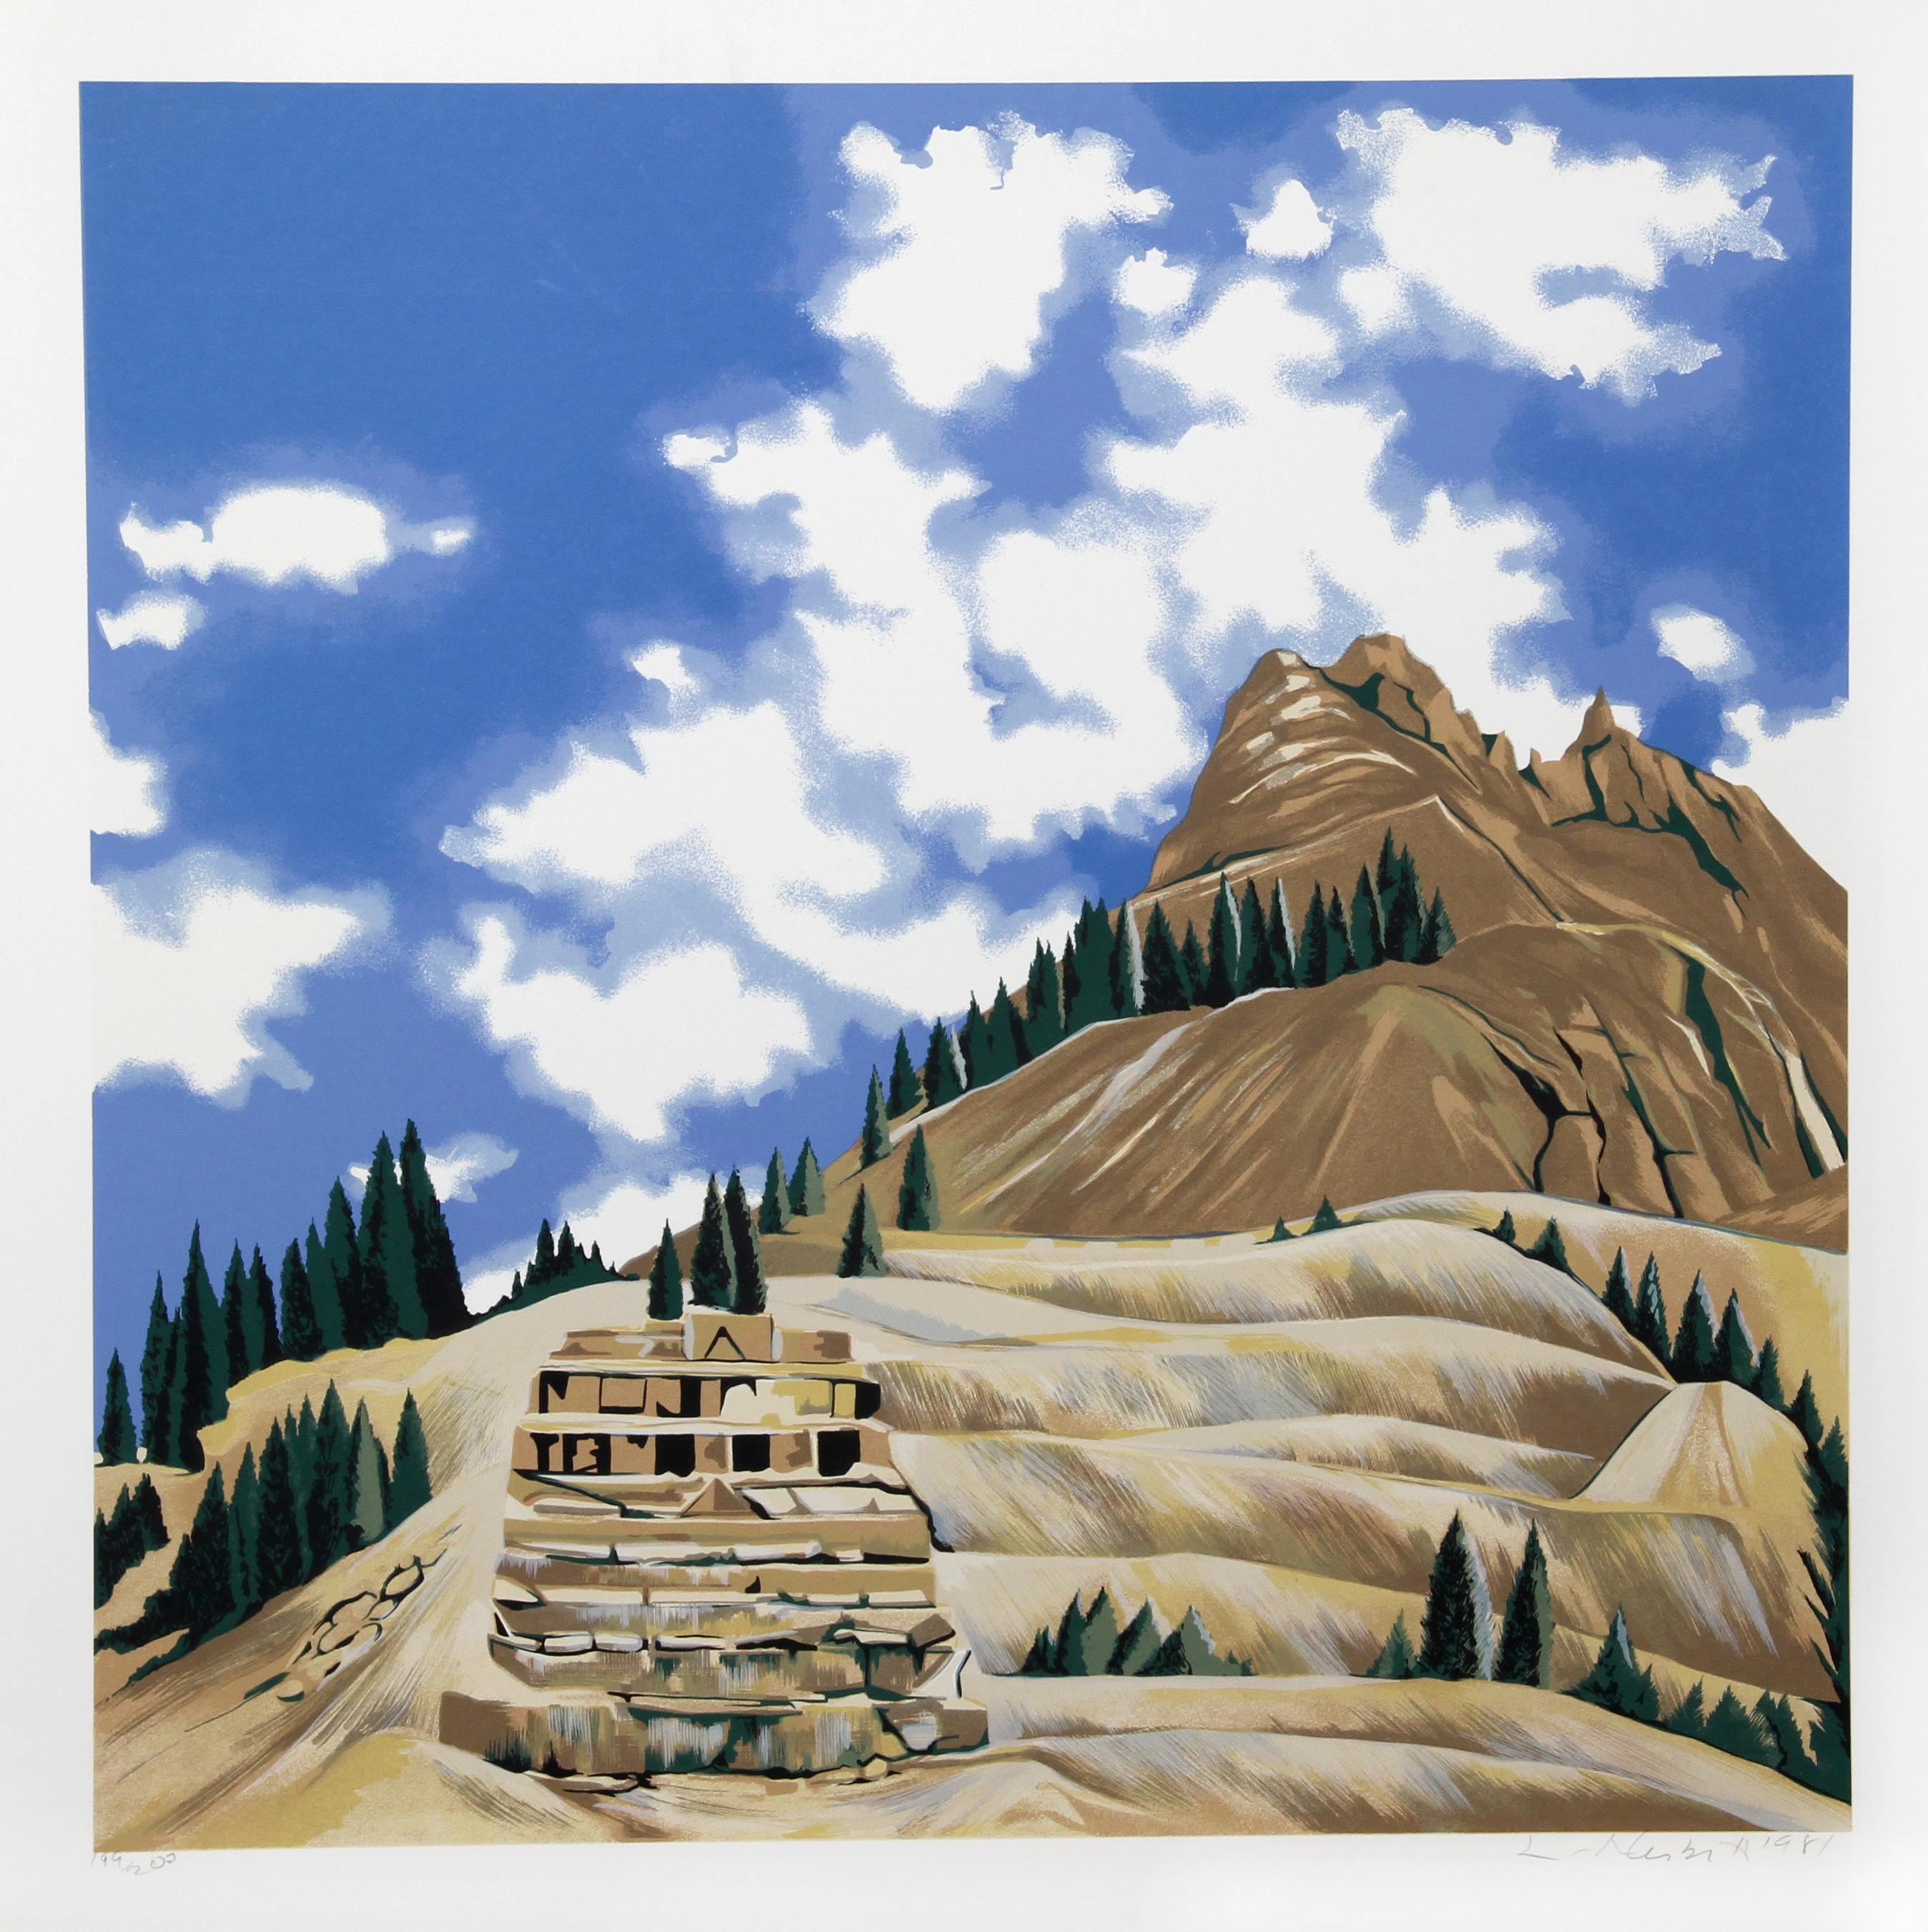 Artiste : Lowell Blair Nesbitt, américain (1933 - 1993)
Titre : Vallée de l'Animas, Colorado I
Année : 1981
Médium : Sérigraphie, signée et numérotée au crayon.
Edition : 200
Taille de l'image : 30 x 30 pouces 
Taille : 35 x 35 in. (88.9 x 88.9 cm)